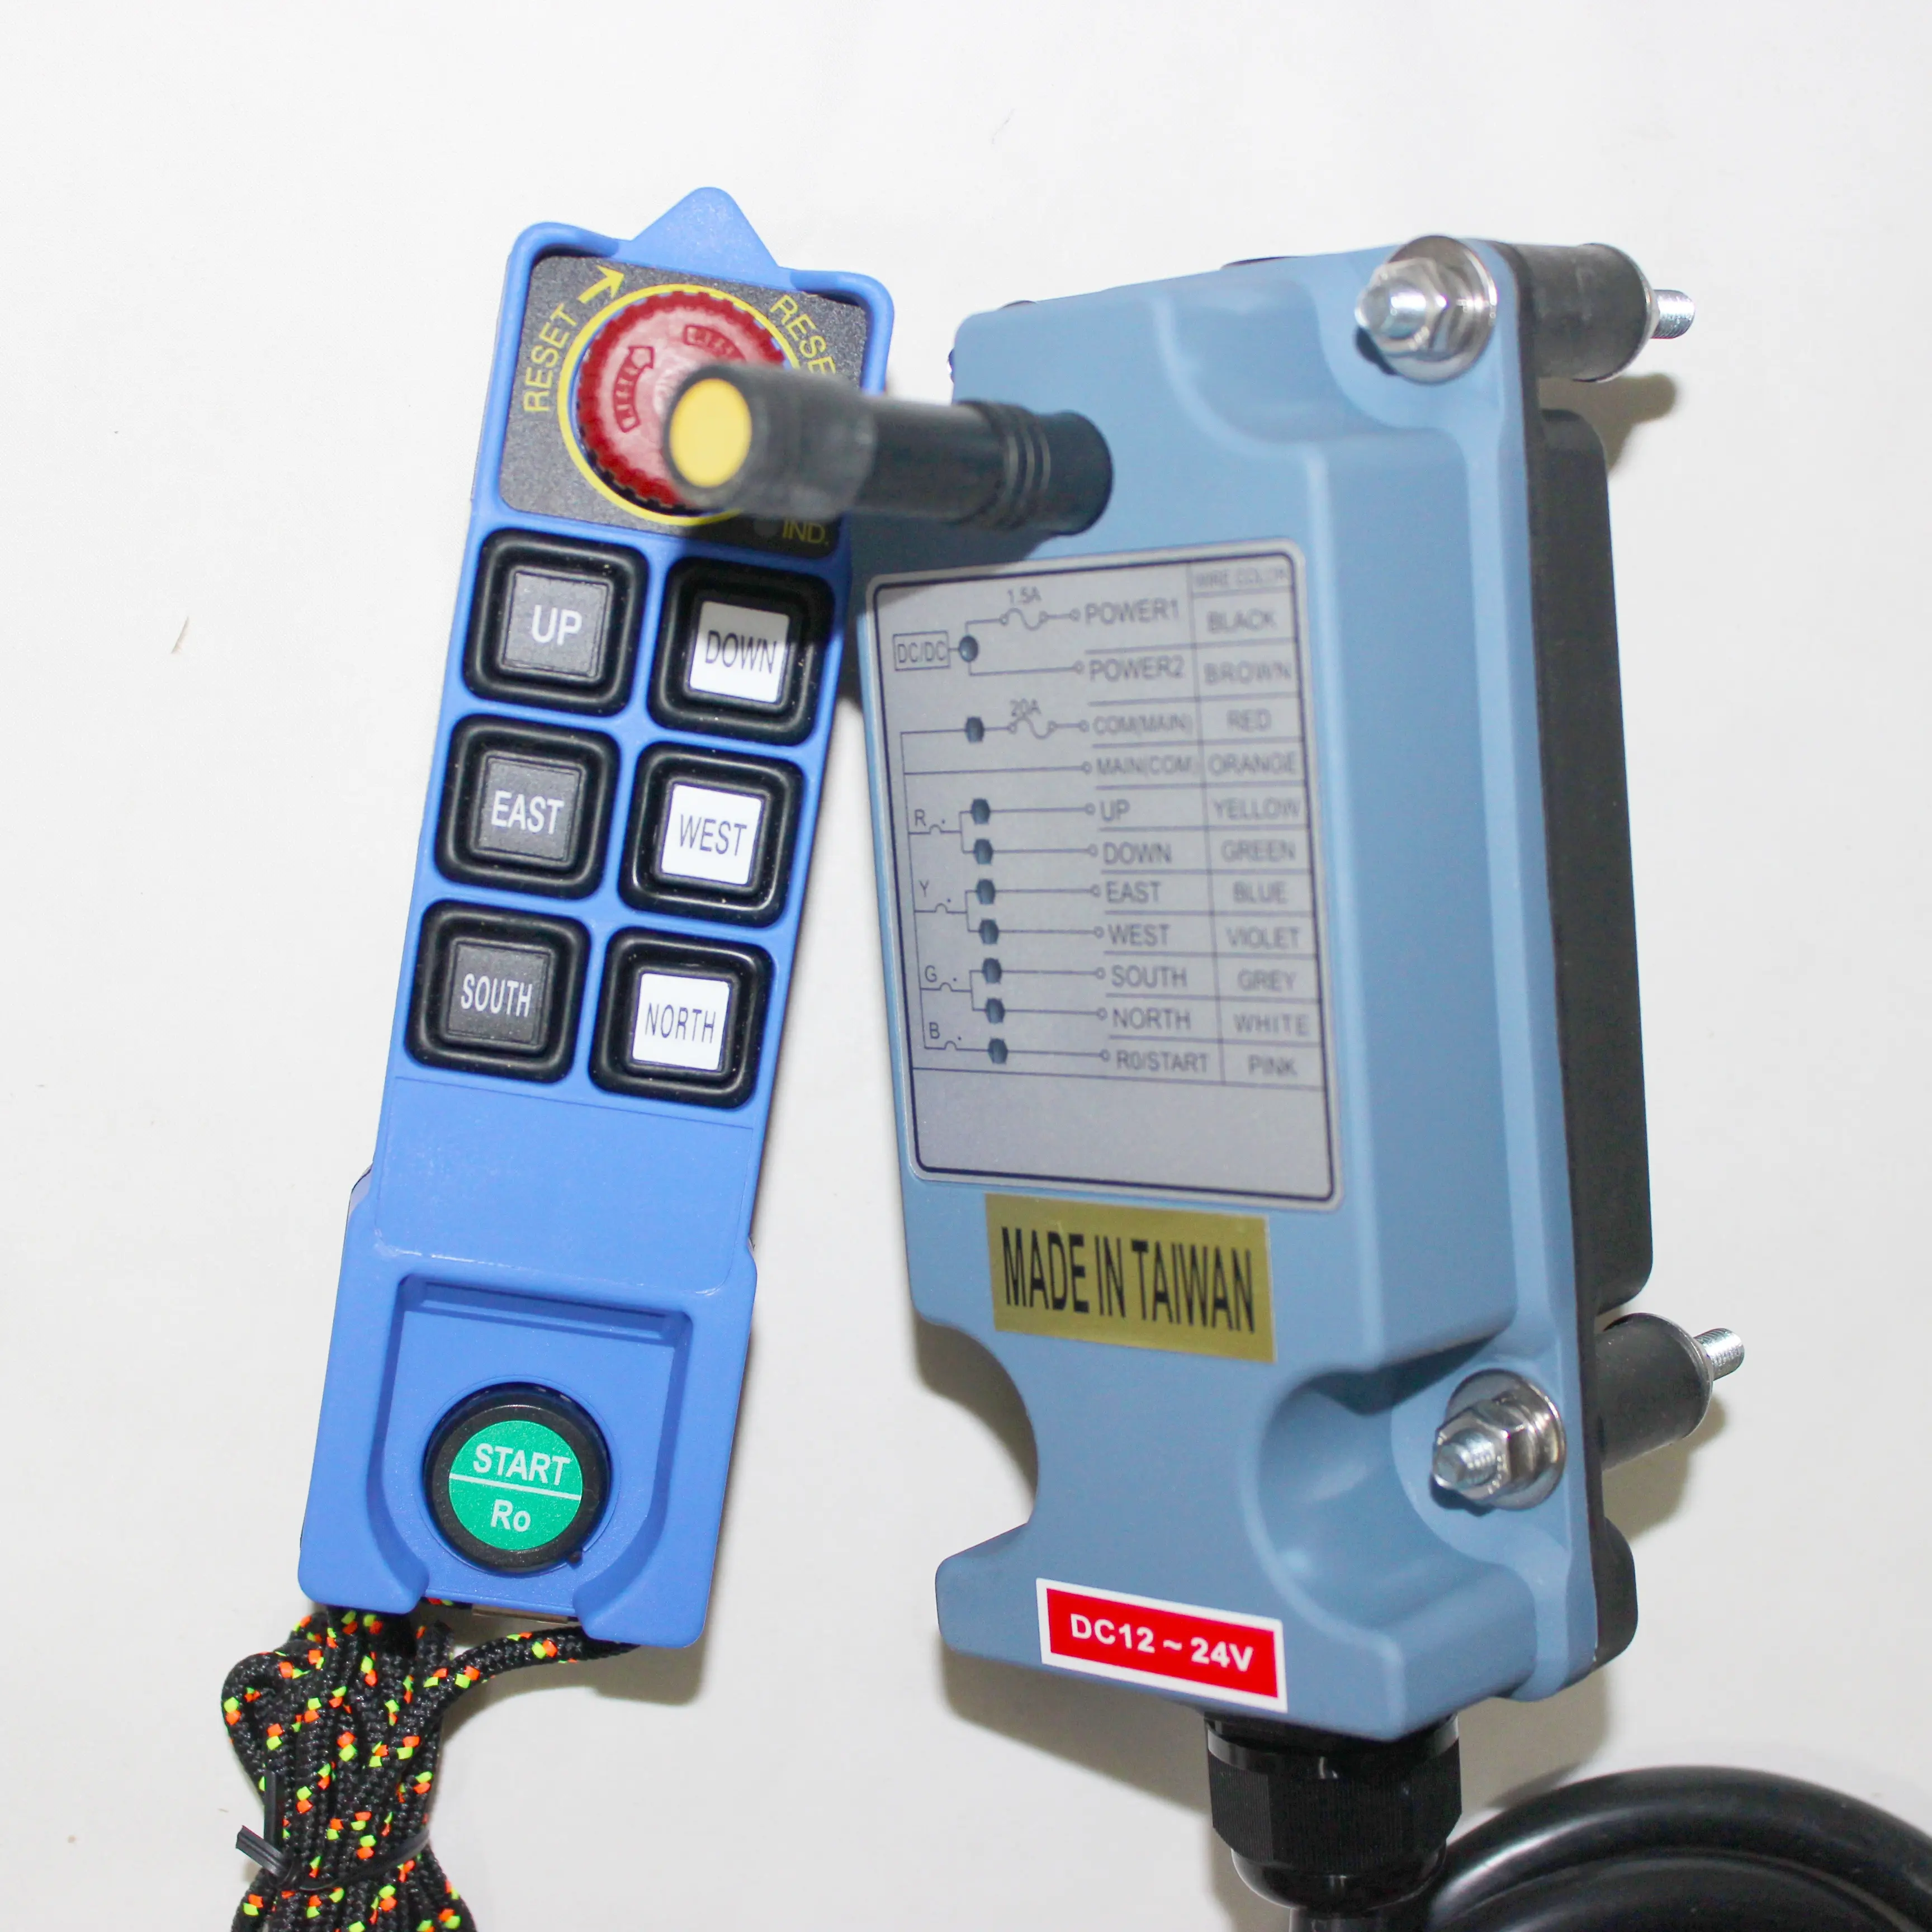 SAGA-mando a distancia inalámbrico para grúa, control remoto de alta calidad, serie SAGA1-L8B